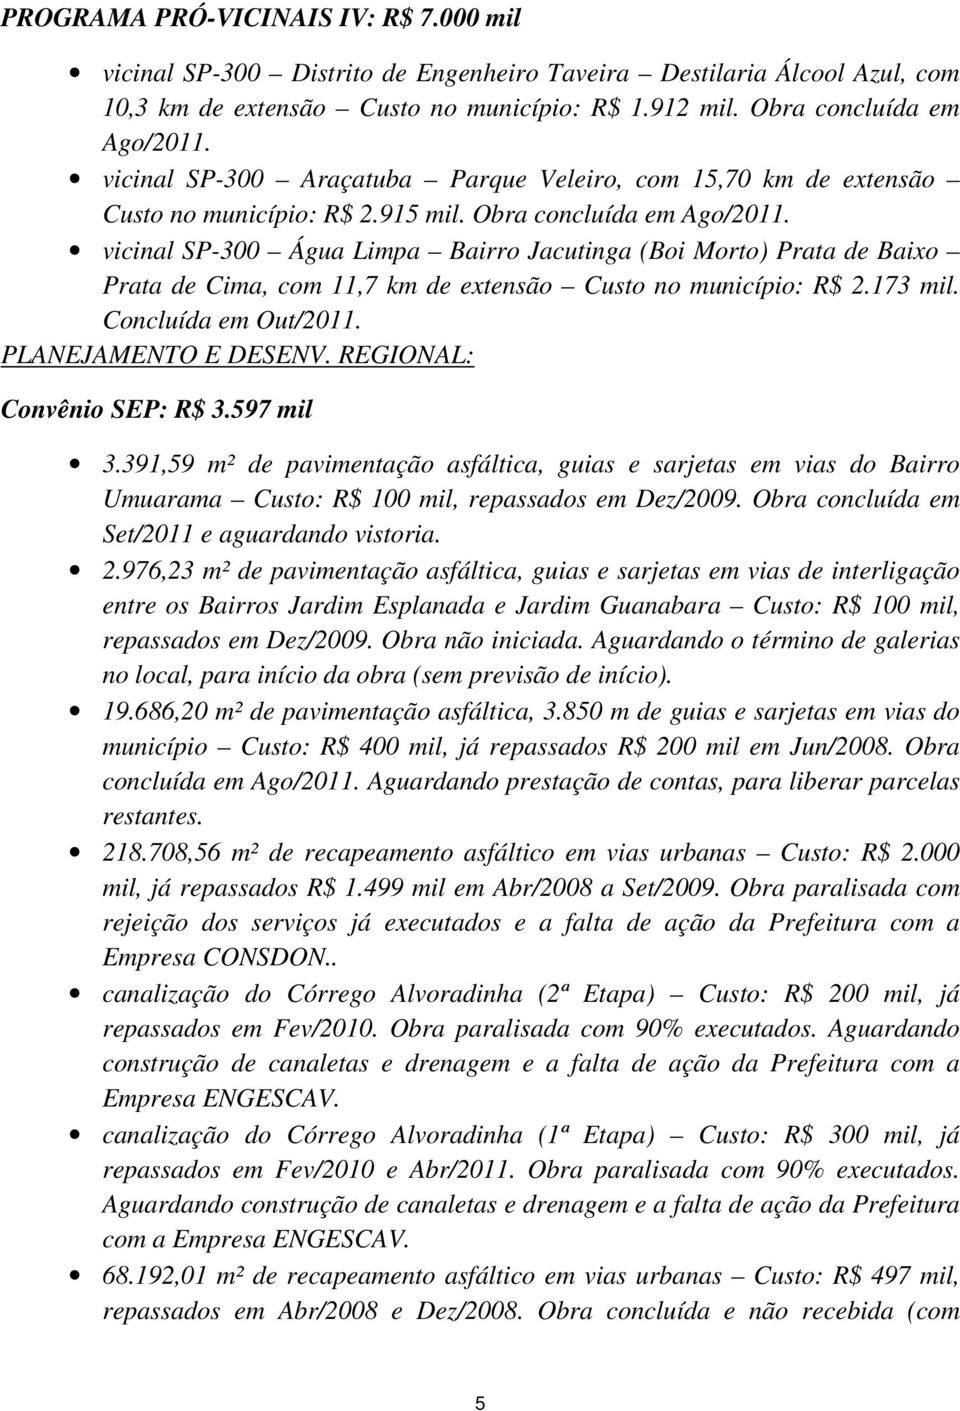 vicinal SP-300 Água Limpa Bairro Jacutinga (Boi Morto) Prata de Baixo Prata de Cima, com 11,7 km de extensão Custo no município: R$ 2.173 mil. Concluída em Out/2011. PLANEJAMENTO E DESENV.